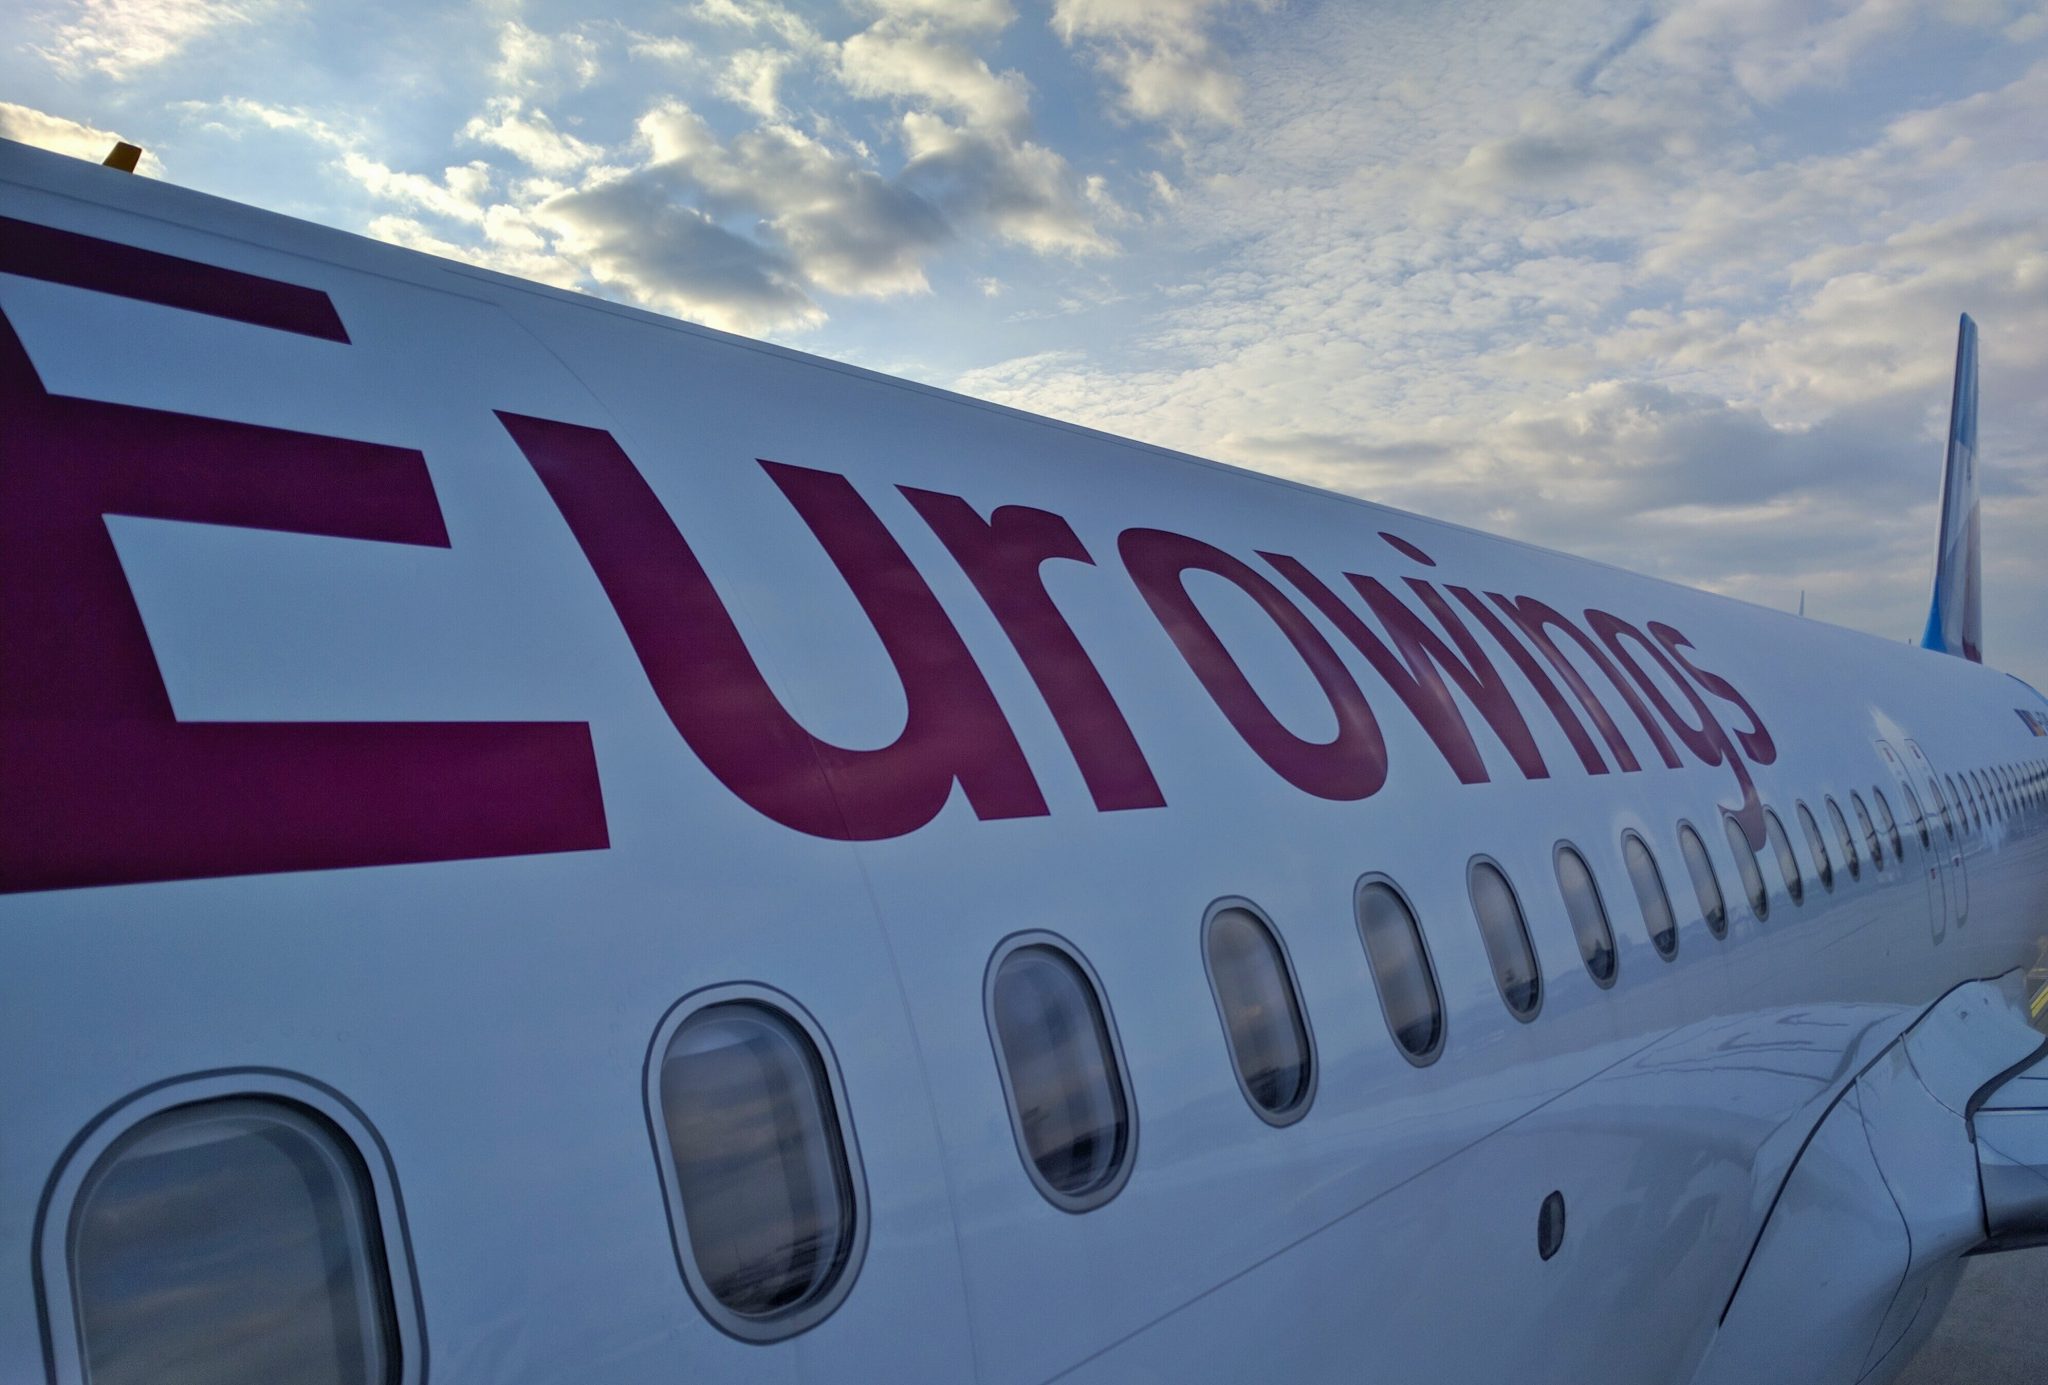 Die airberlin-Strecken würden voraussichtlich von Eurowings übernommen